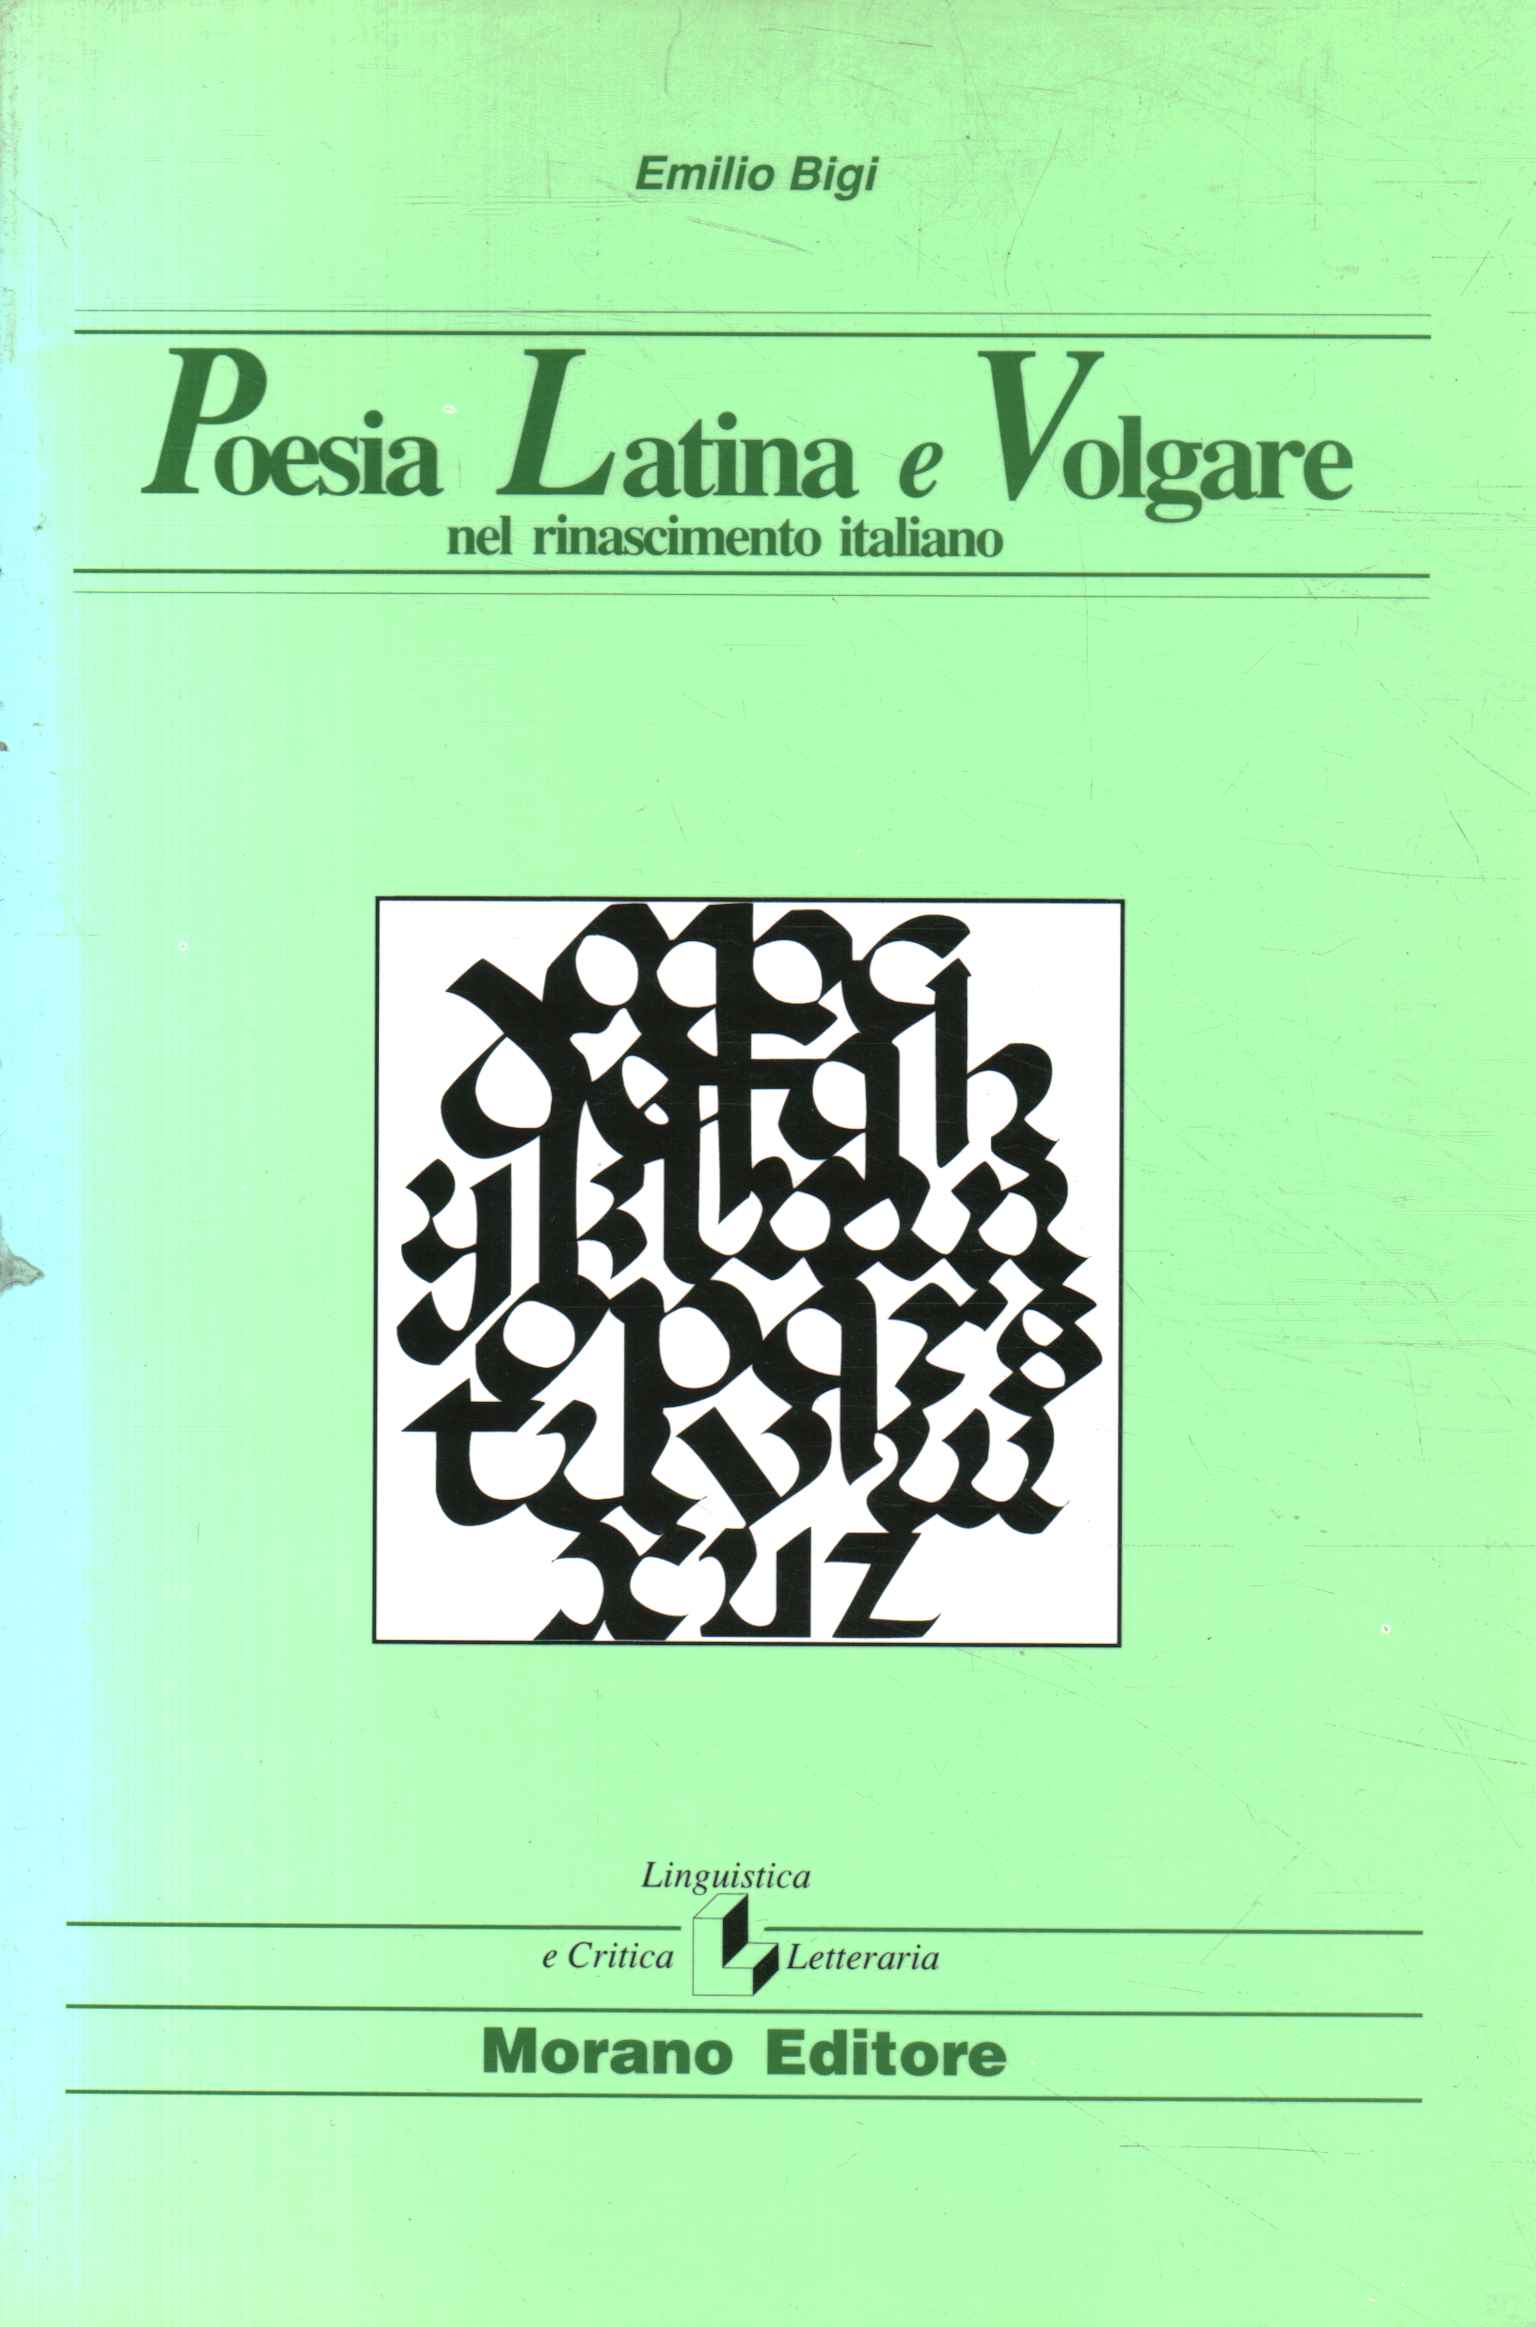 Lateinische und volkssprachliche Poesie in der Renaissance